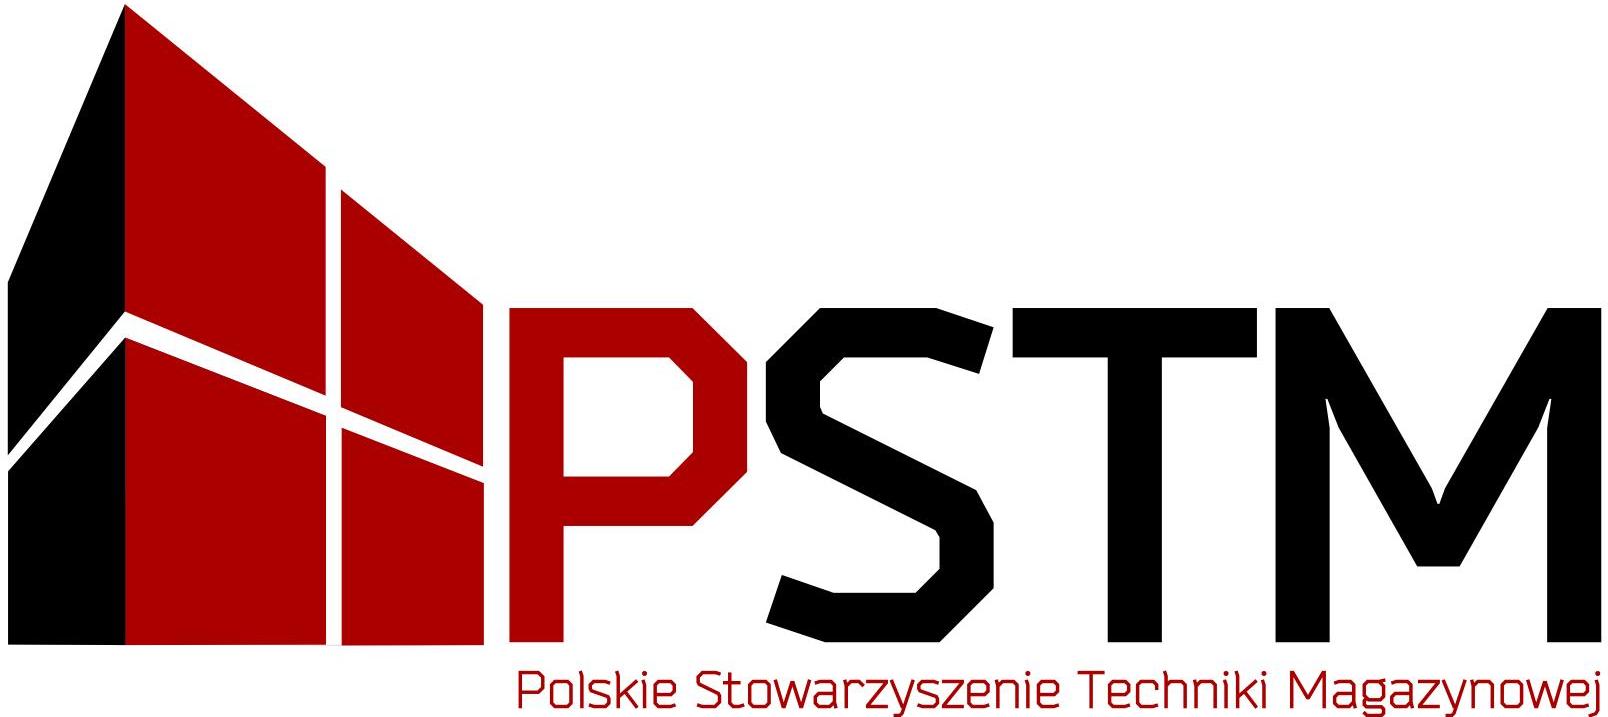 Polskie Stowarzyszenie Techniki Magazynowej